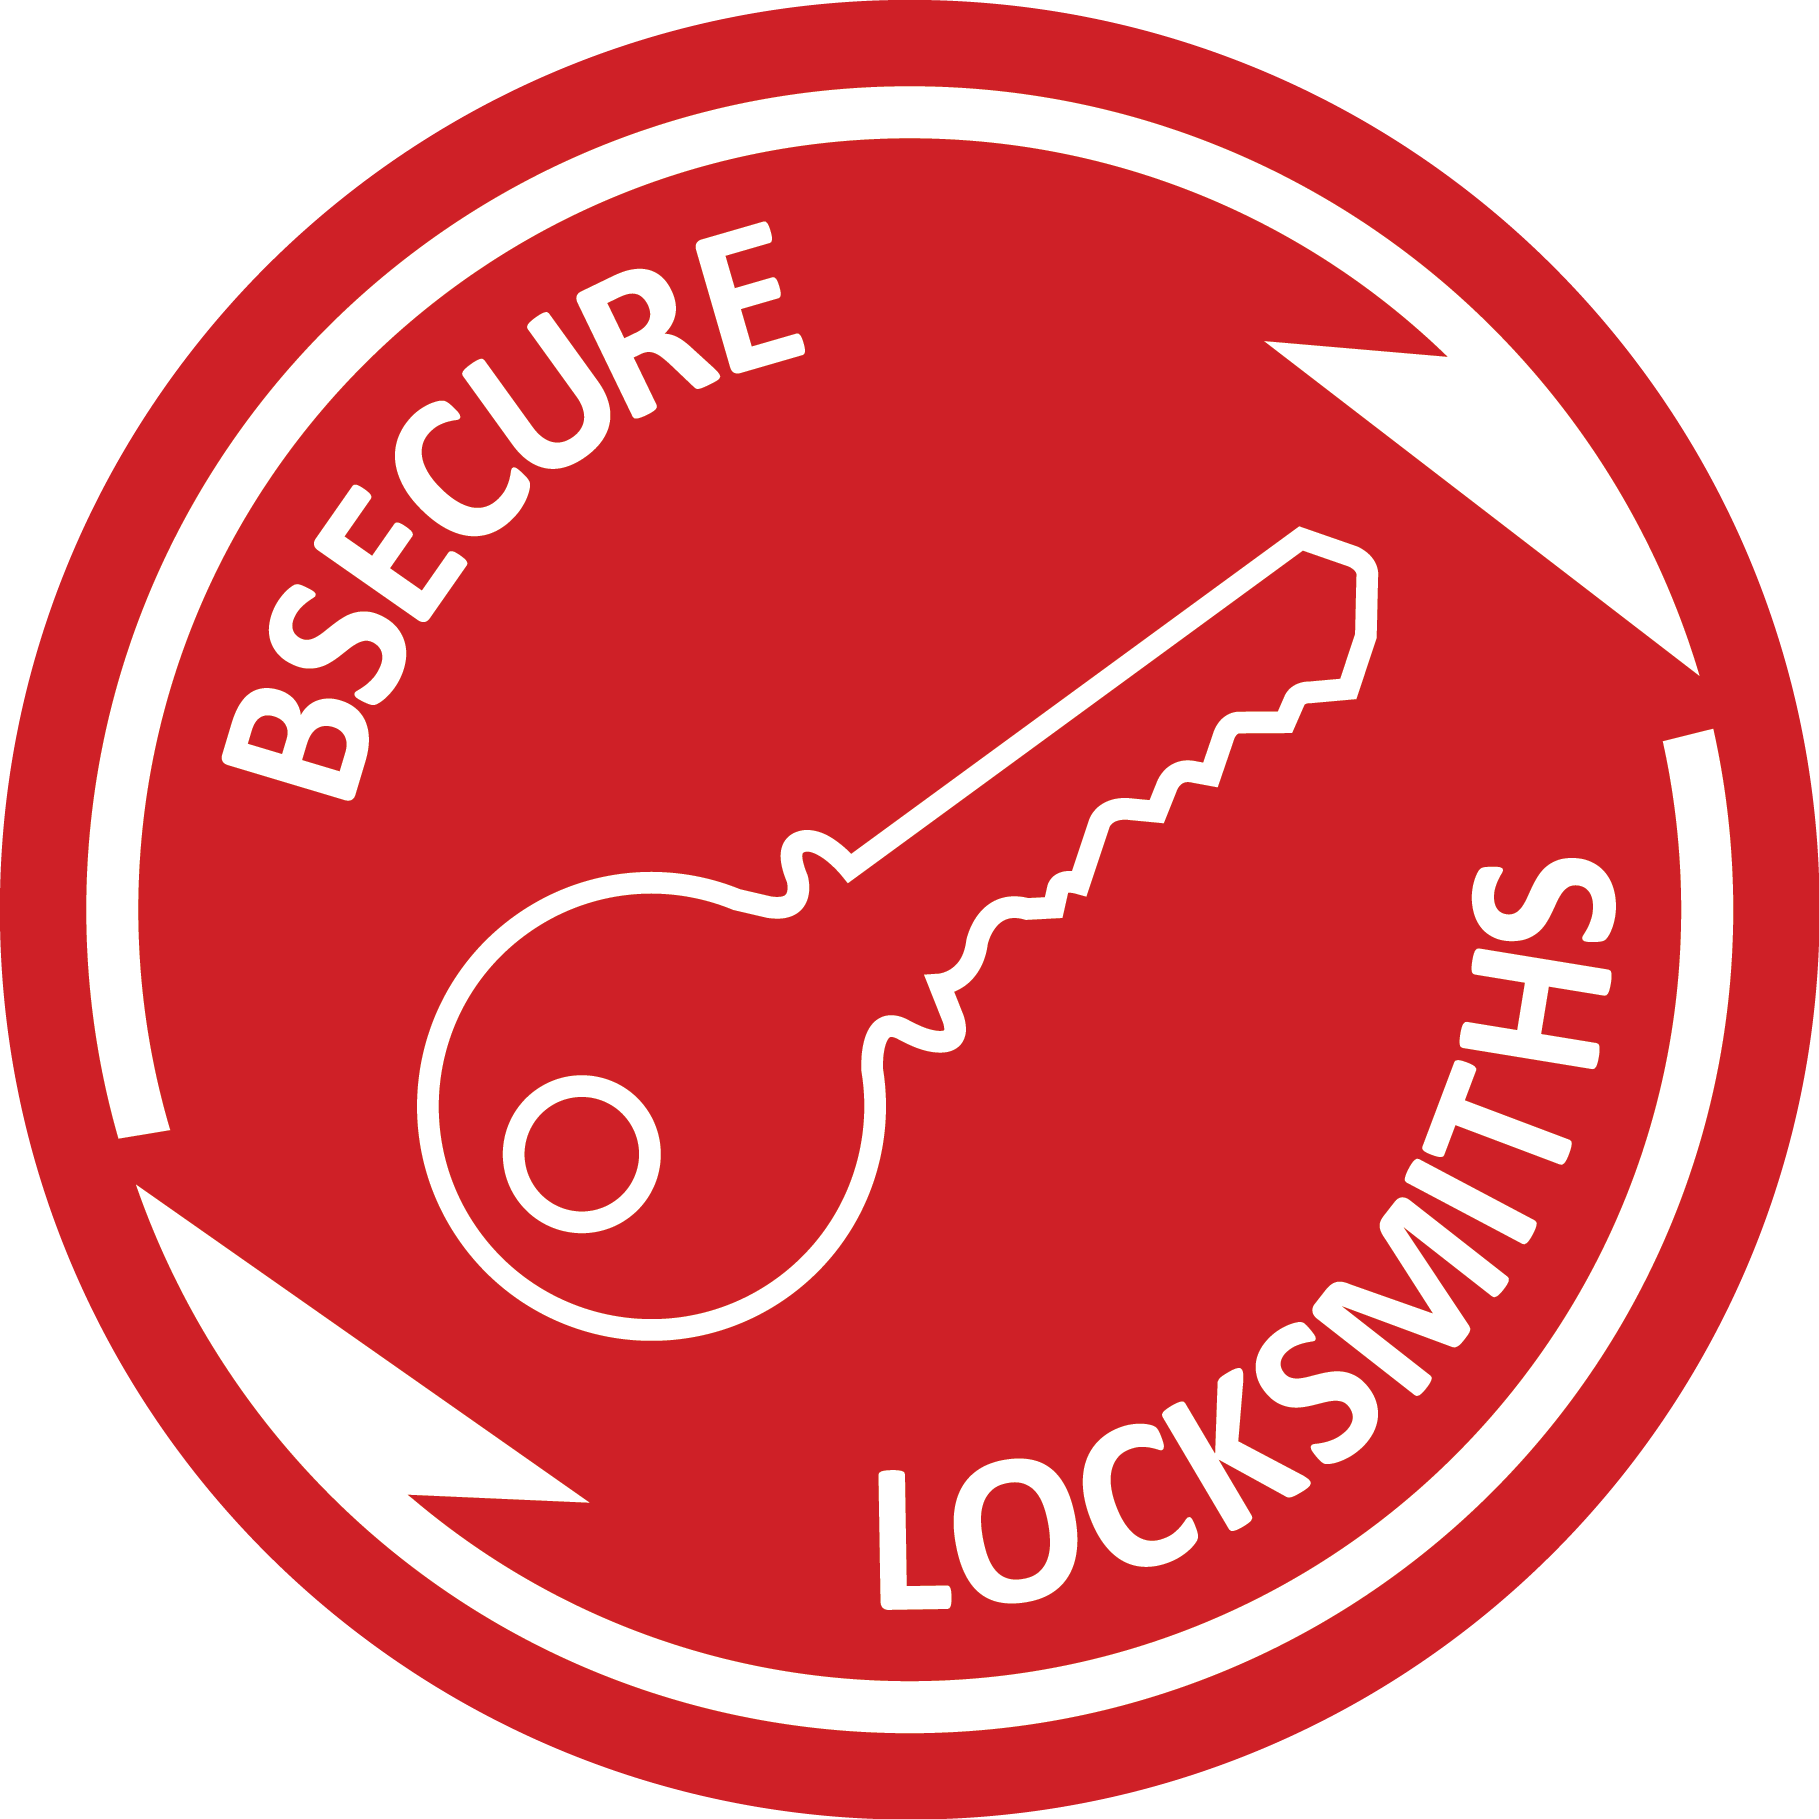 Bsecure Locksmiths Sleaford